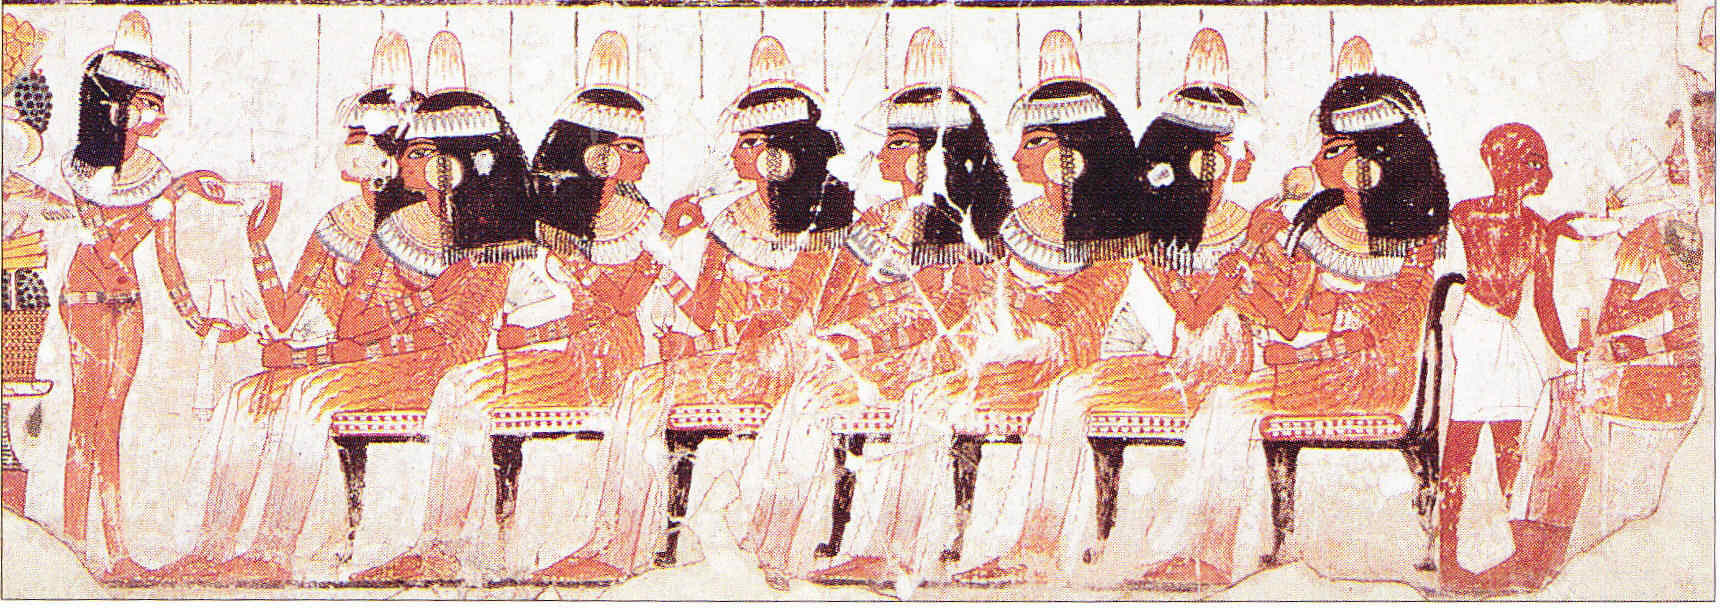 Egipto Antiguo 170 Juntos de nuevo